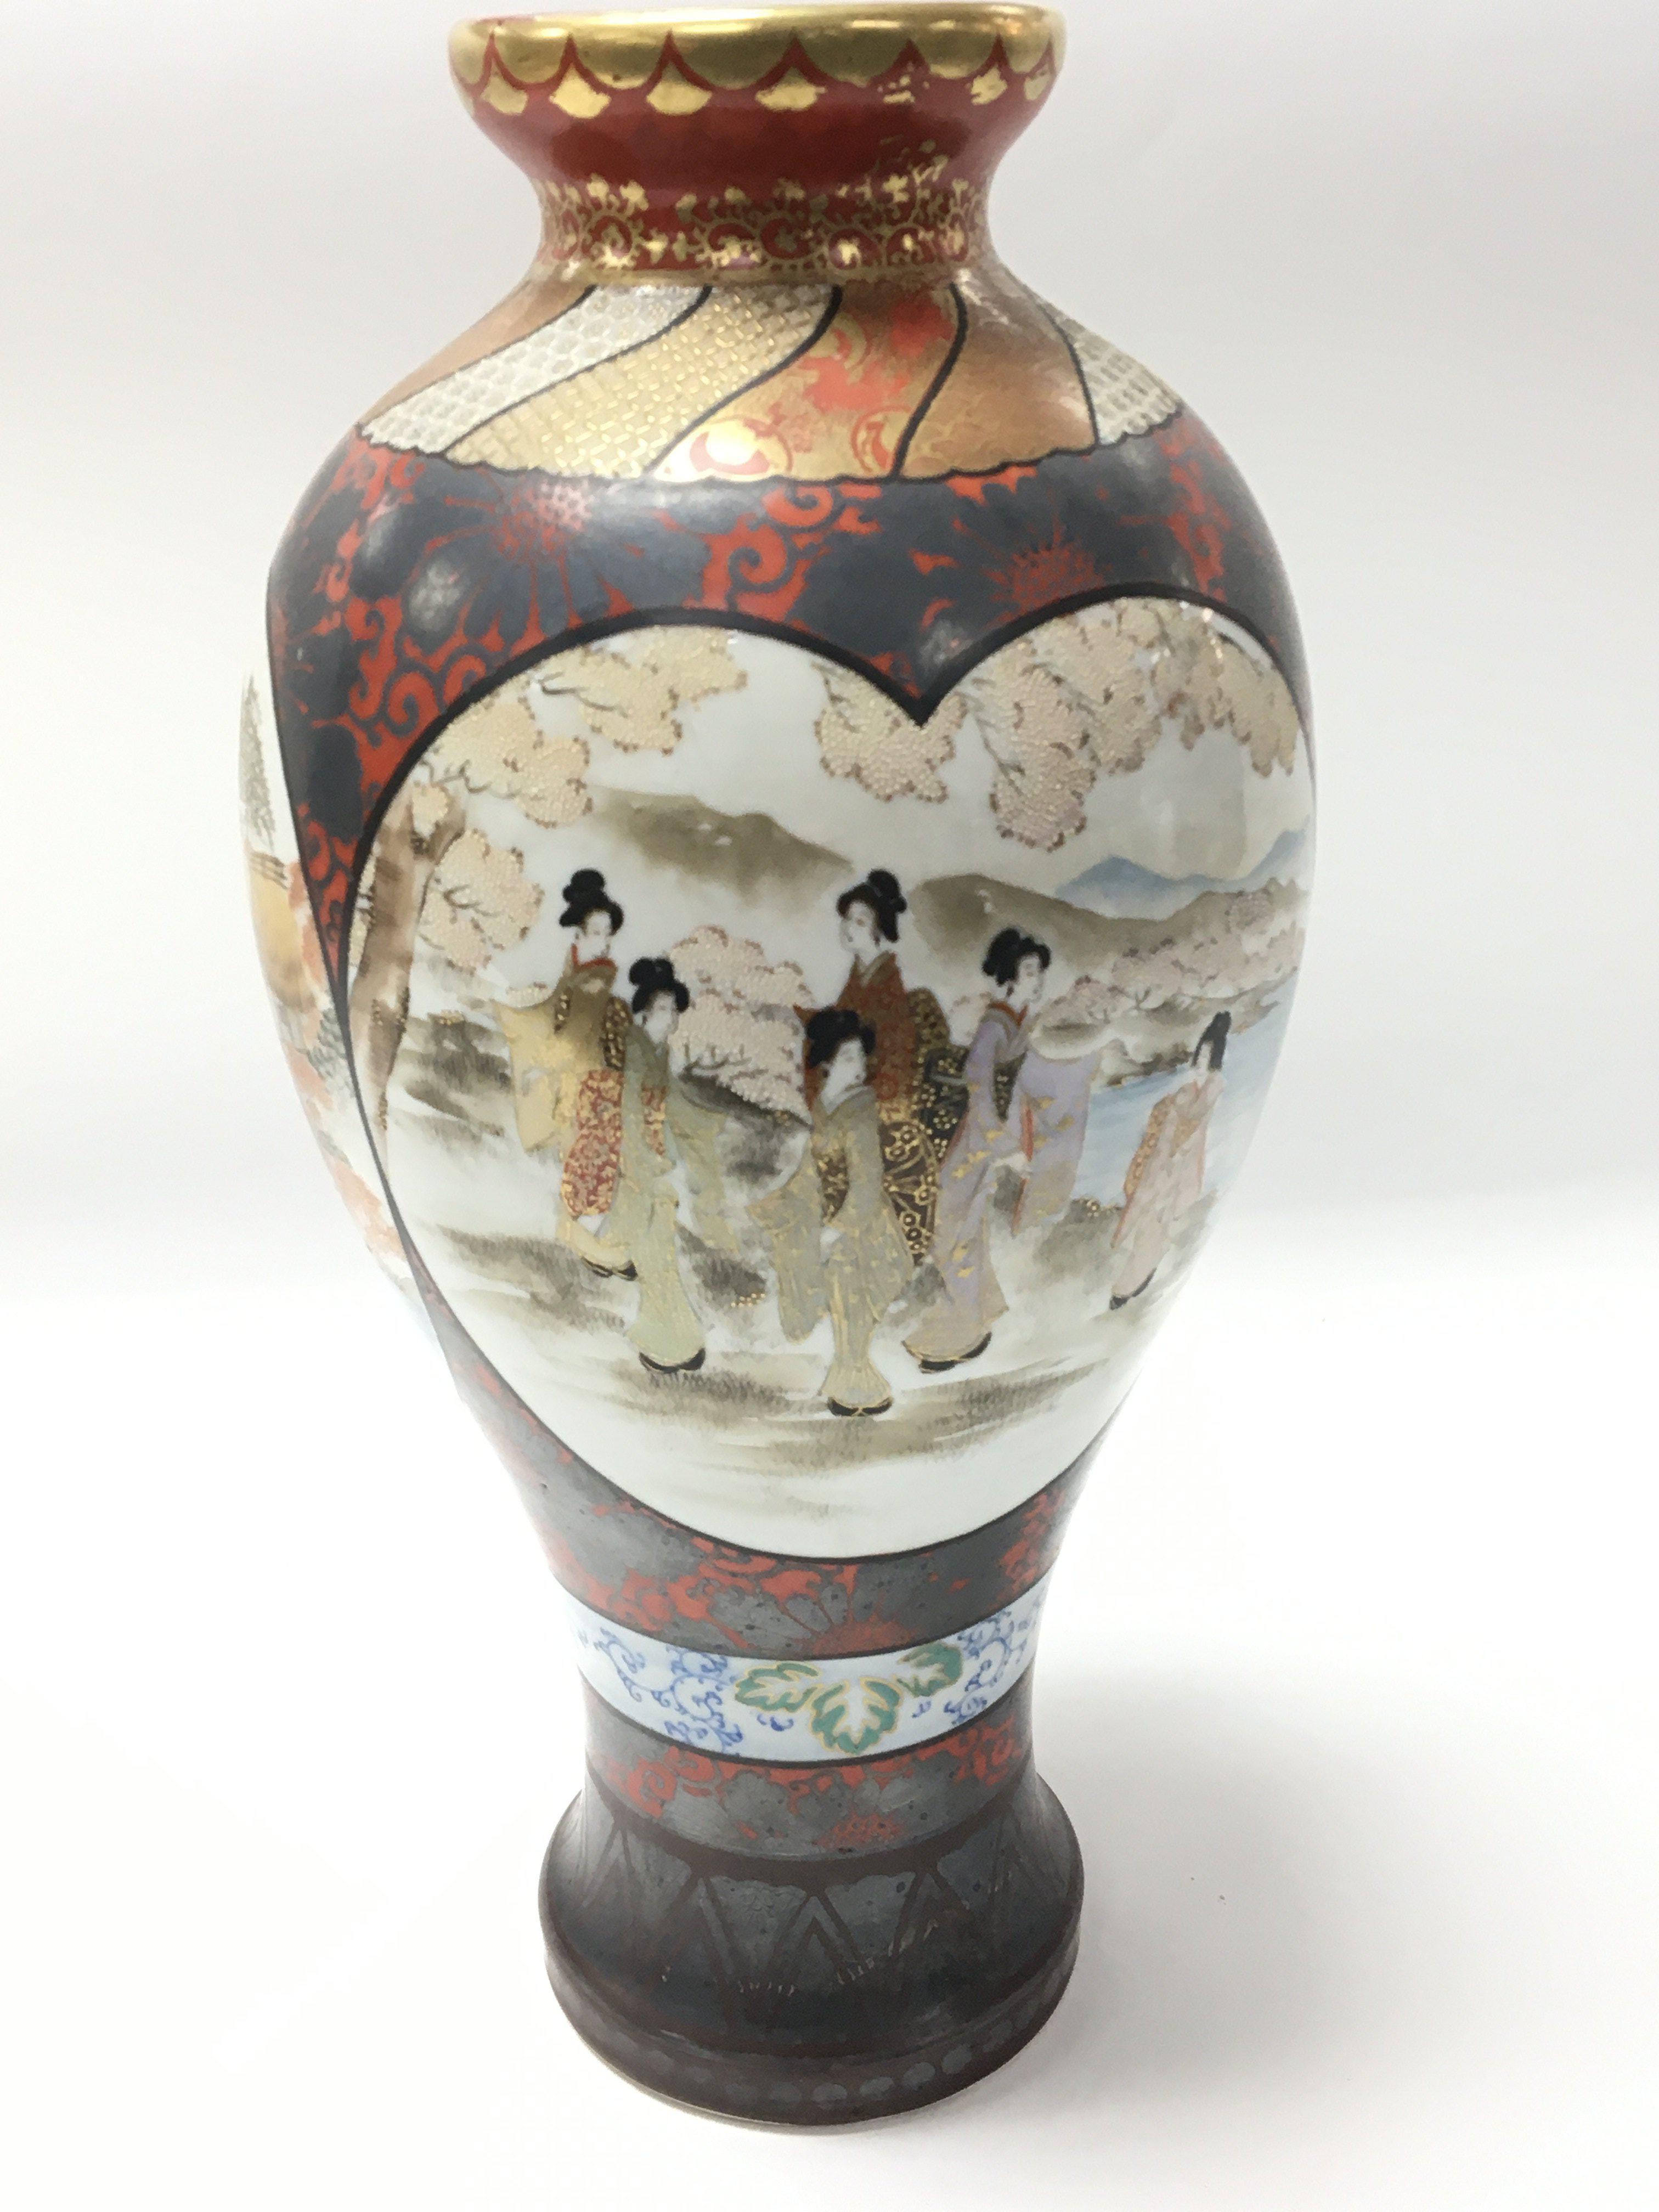 A late 19th century Japanese Kutani porcelain vase